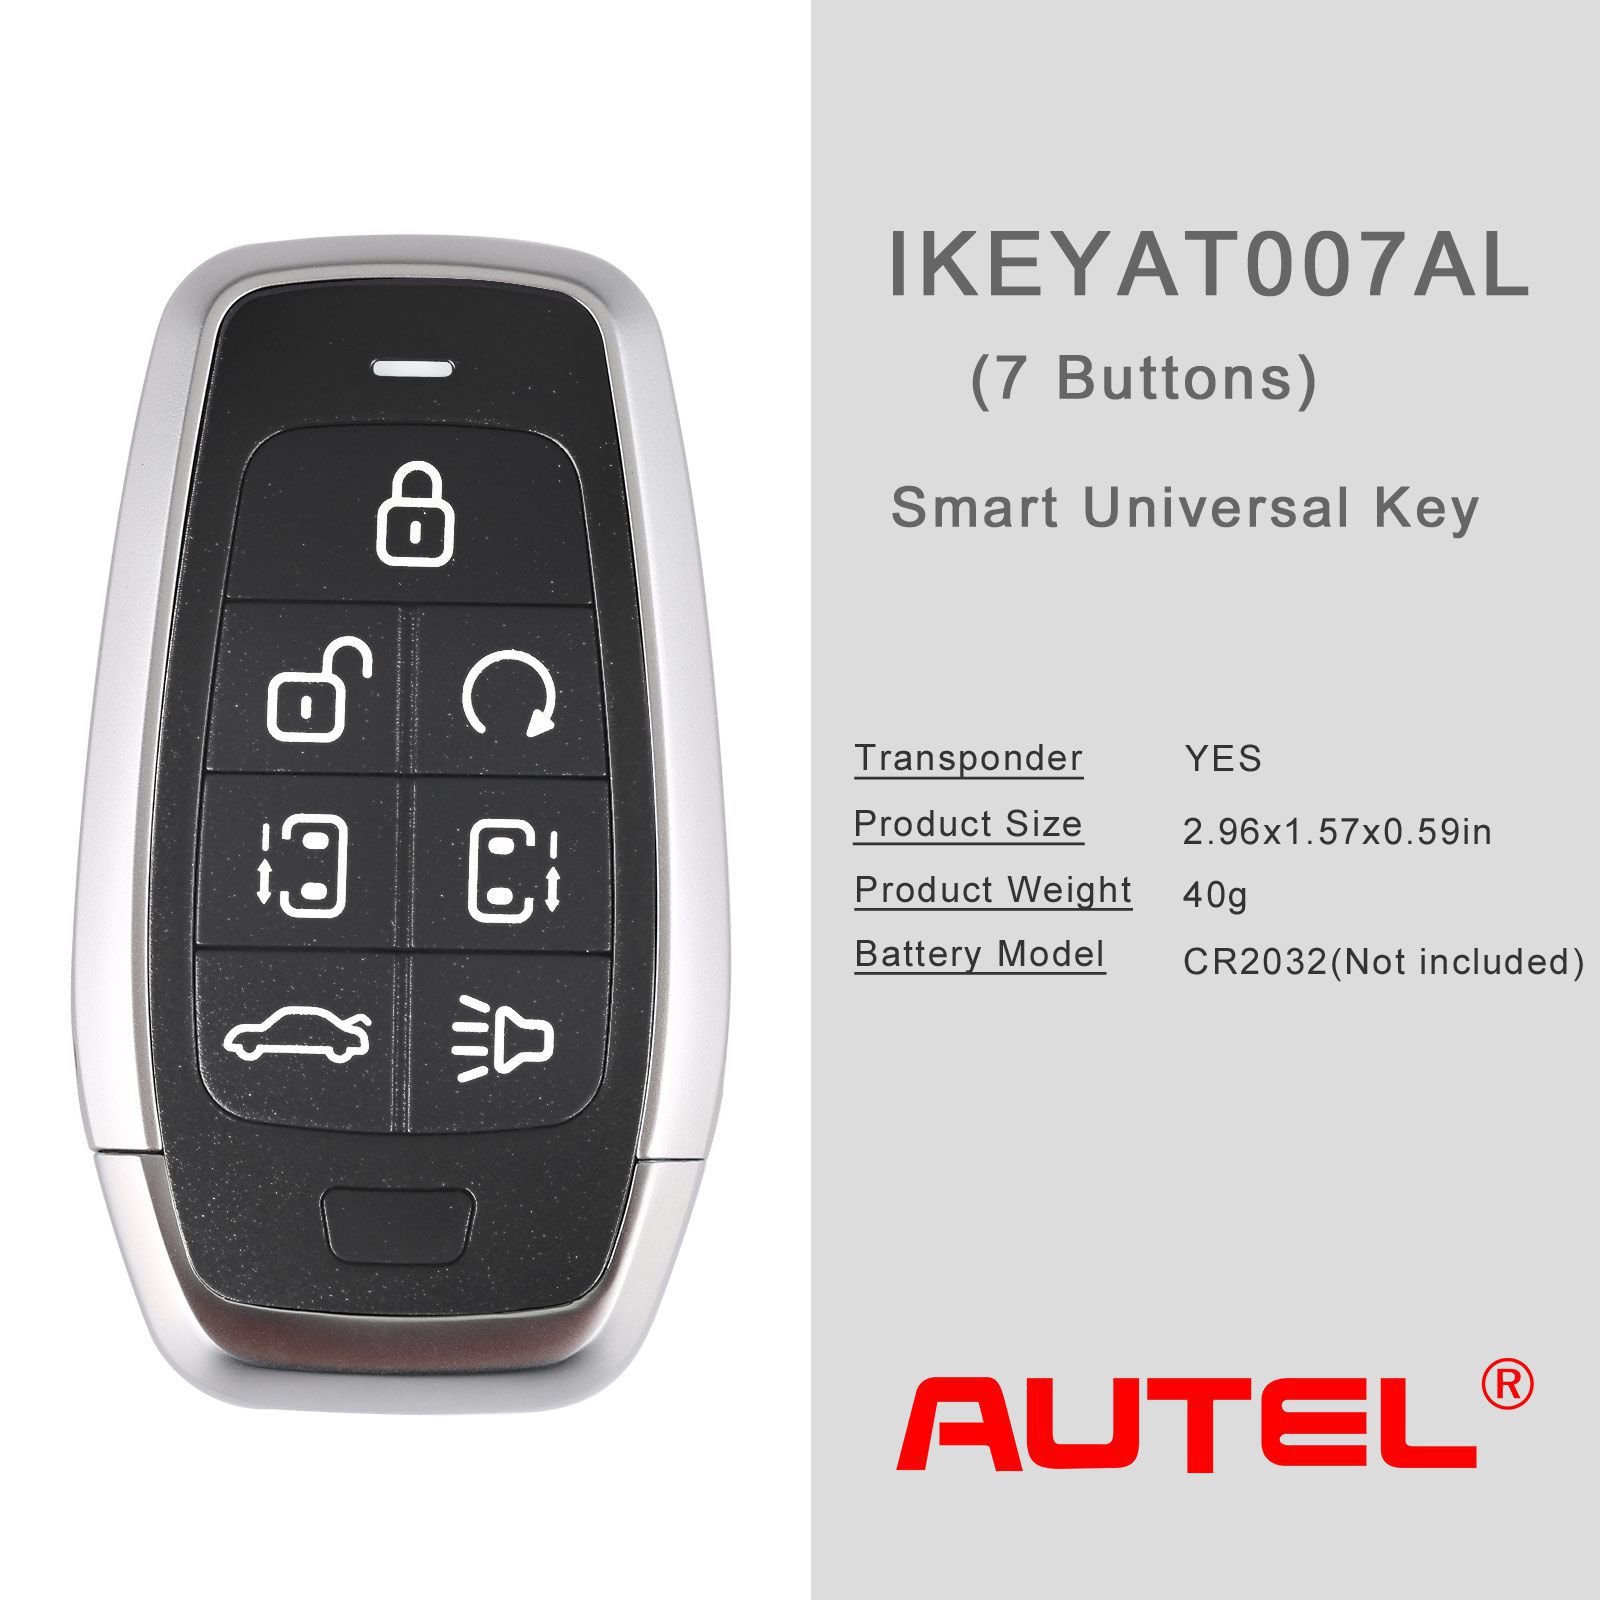 Autel ikeyat007al 7 boutons clés intelligentes universelles indépendantes 5pcs / lot